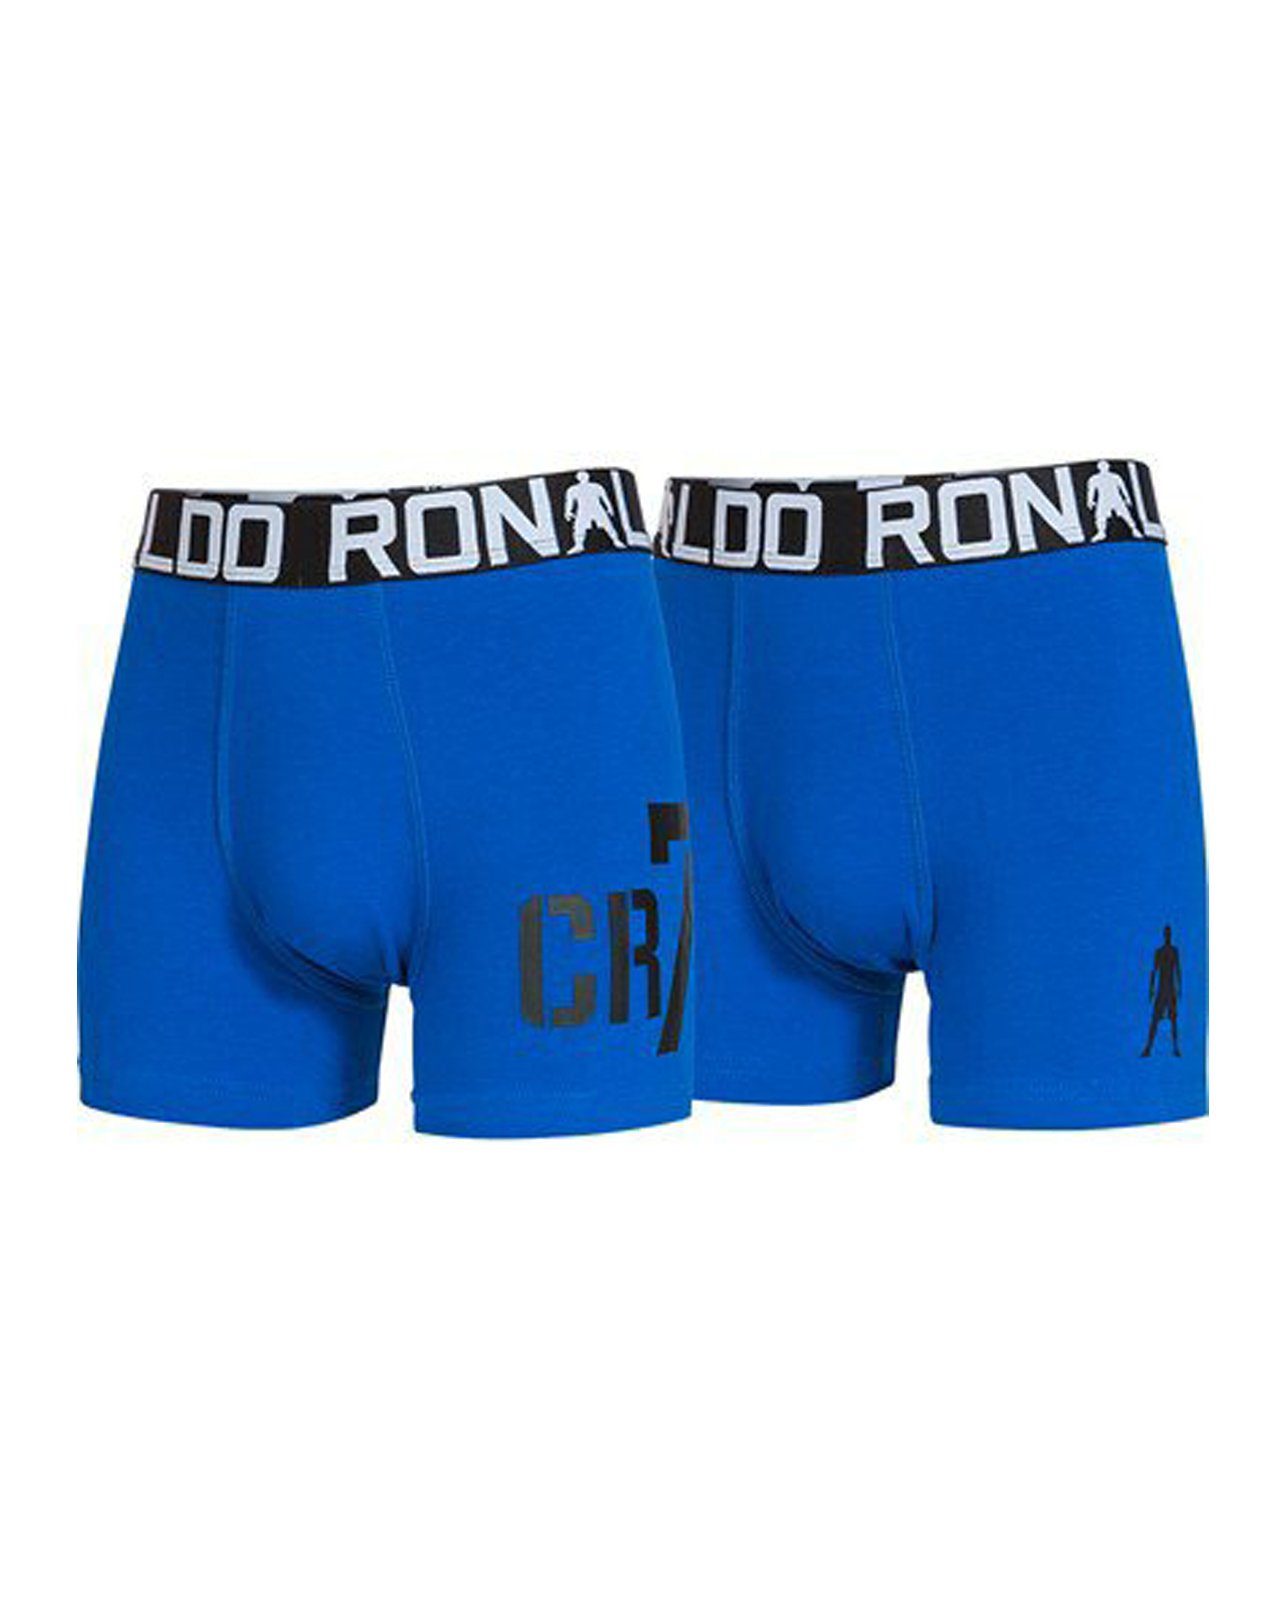 Pants CR7 4er 4er-Pack) Blau Boy Boxershorts (Sparpack, Pack